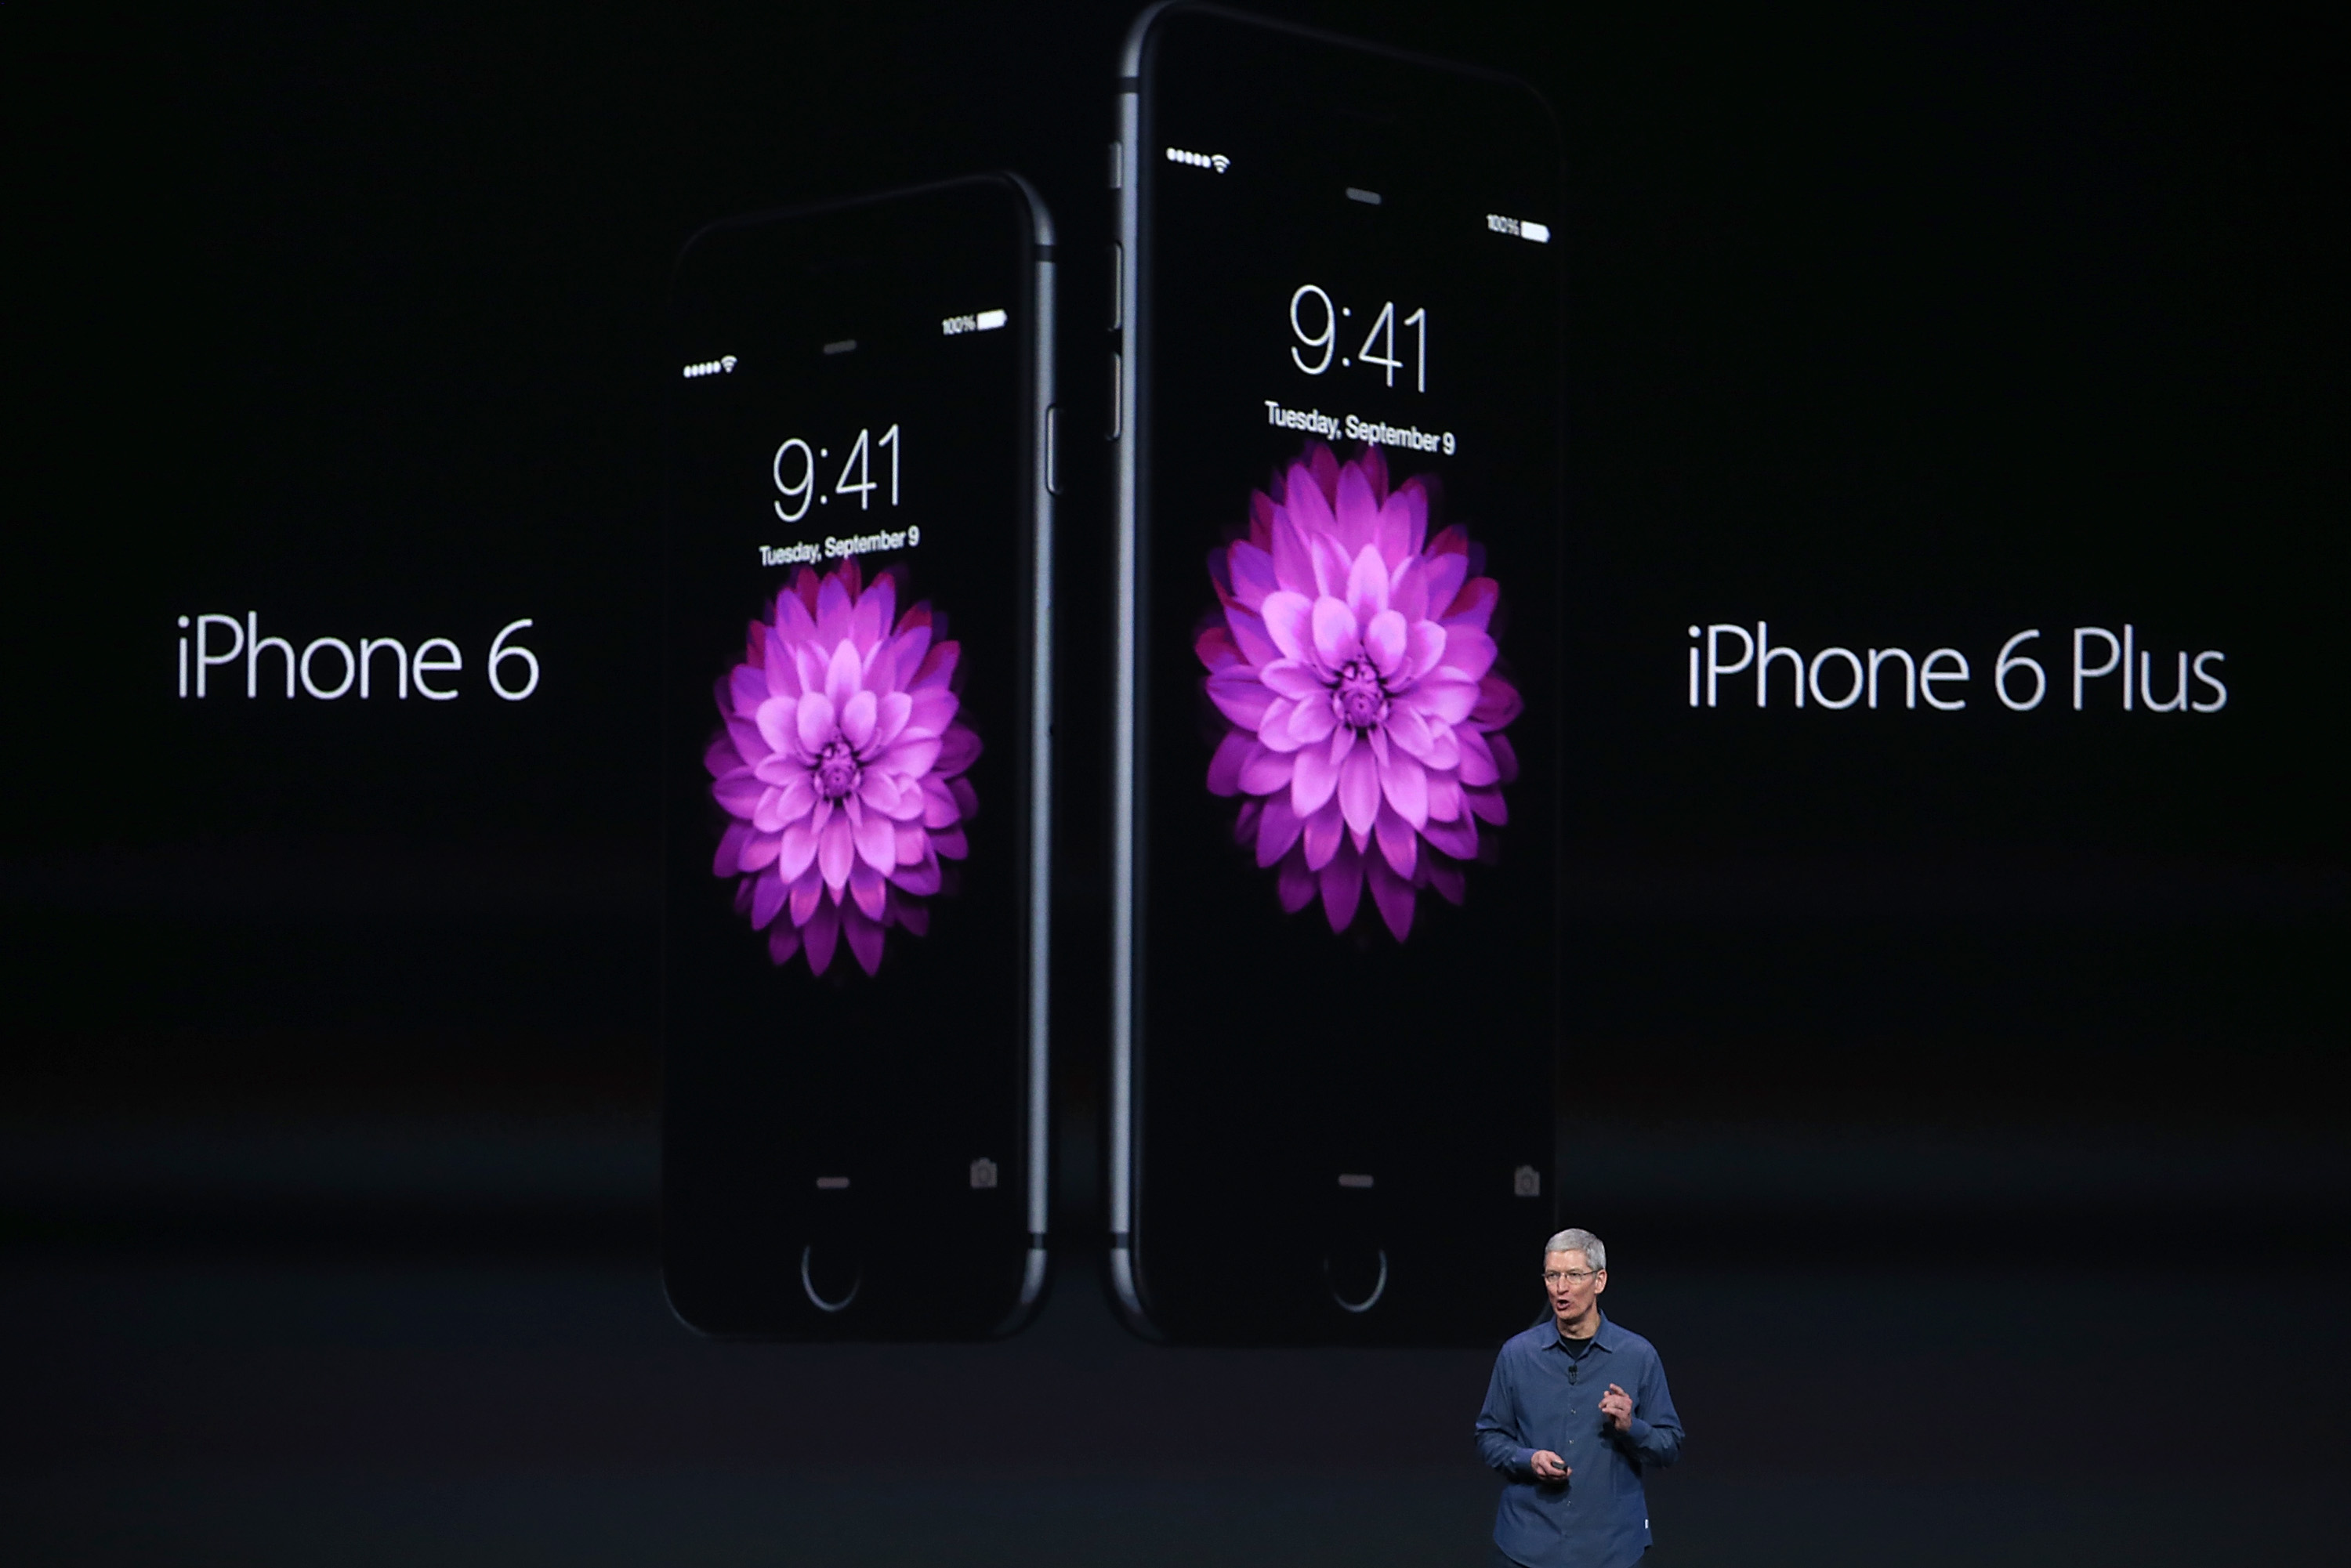 iPhone 6 und 6 Plus bei Foxconn: Produktionstempo von 6 iPhones pro Sekunde reicht nicht aus!